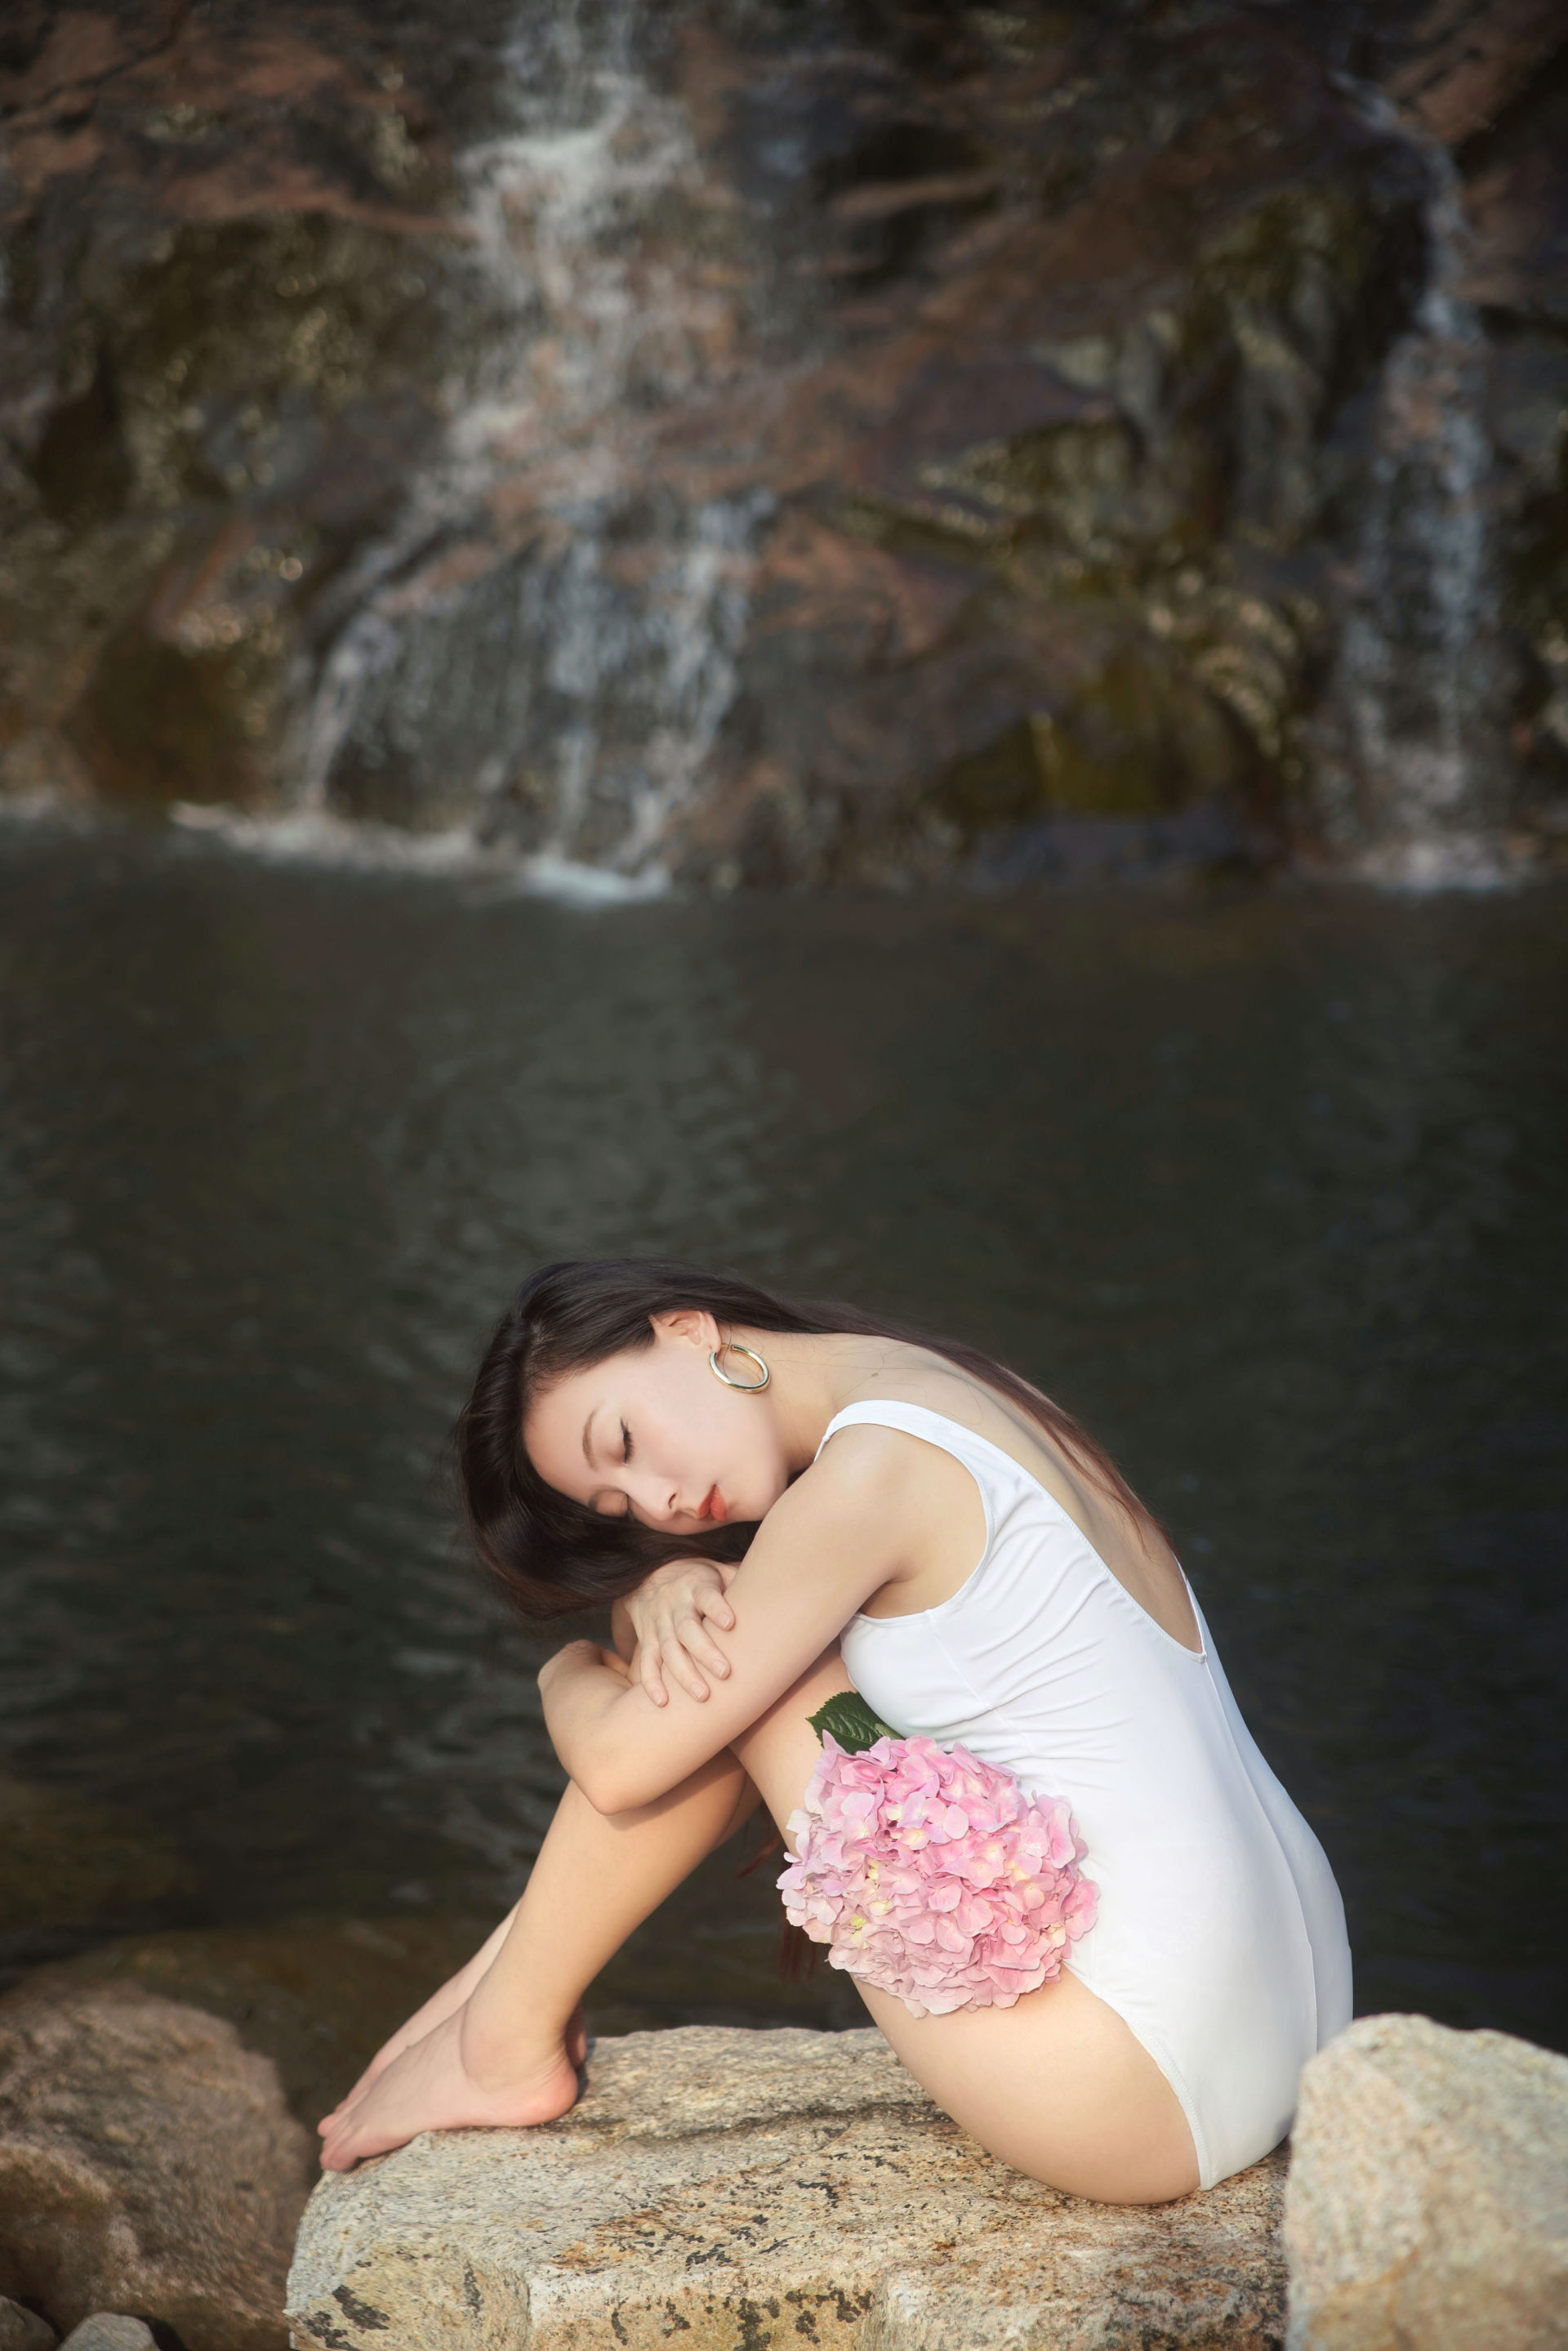 水中的绣球花 优美 摄影模特 人像 花 小溪流水 艺术